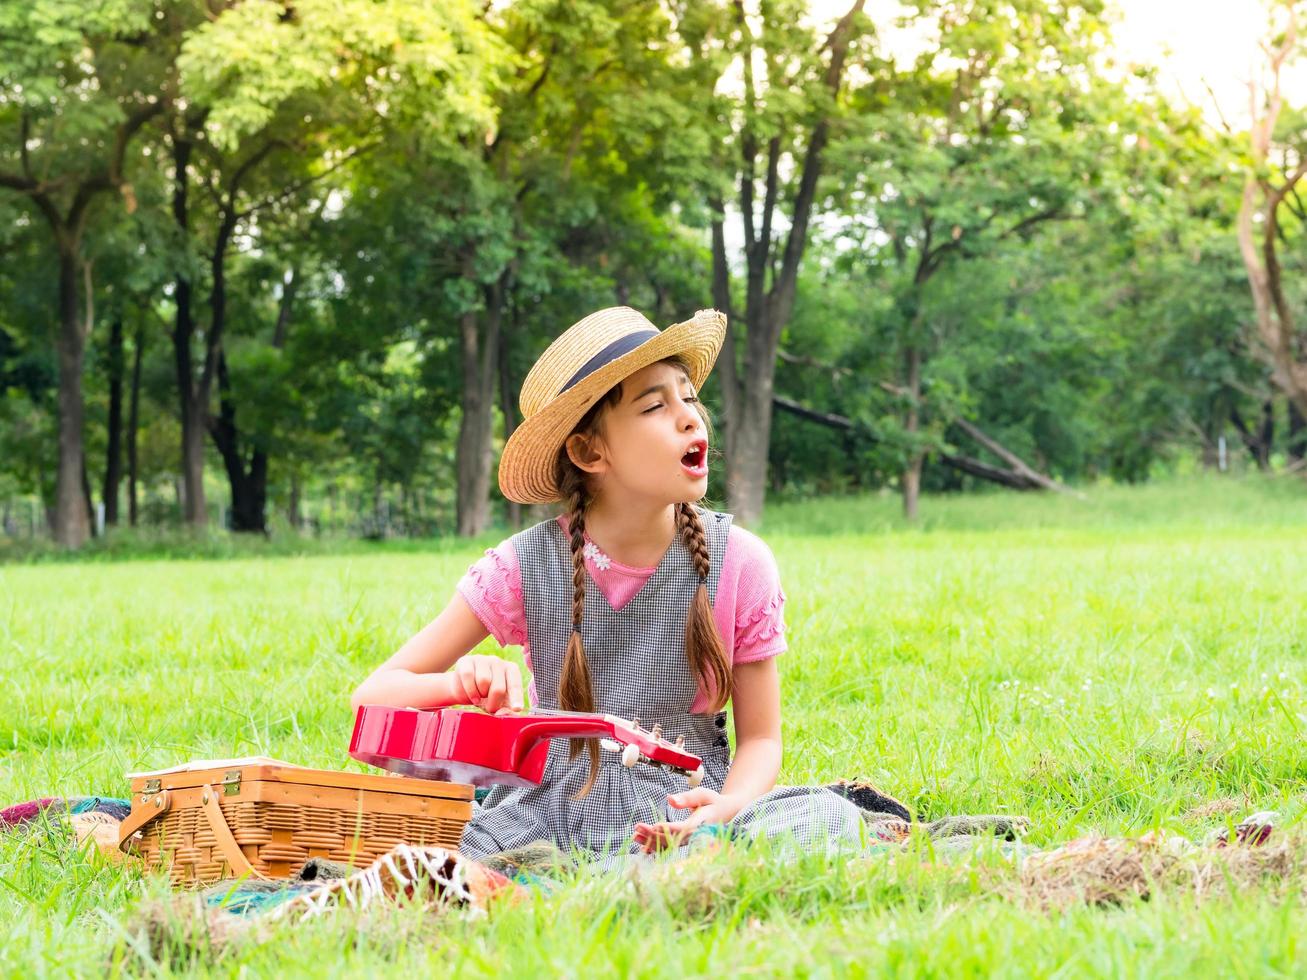 la ragazza si siede sull'erba e impara a suonare l'ukulele, imparando fuori dalla scuola nel parco naturale foto